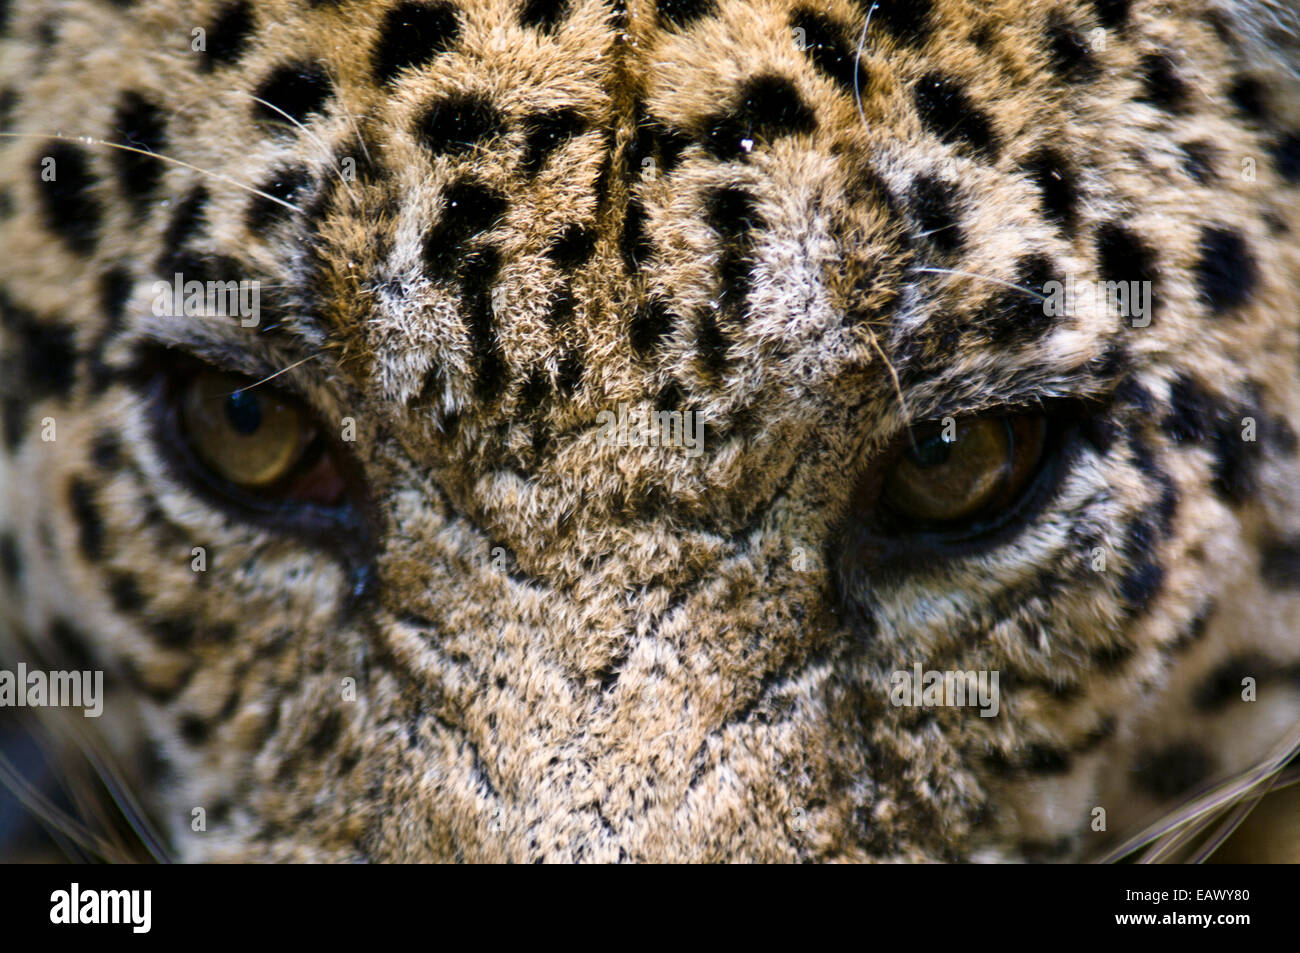 Die bedrohlichen Blick eines Jaguars, Raubfisch des Amazonas-Regenwaldes. Stockfoto